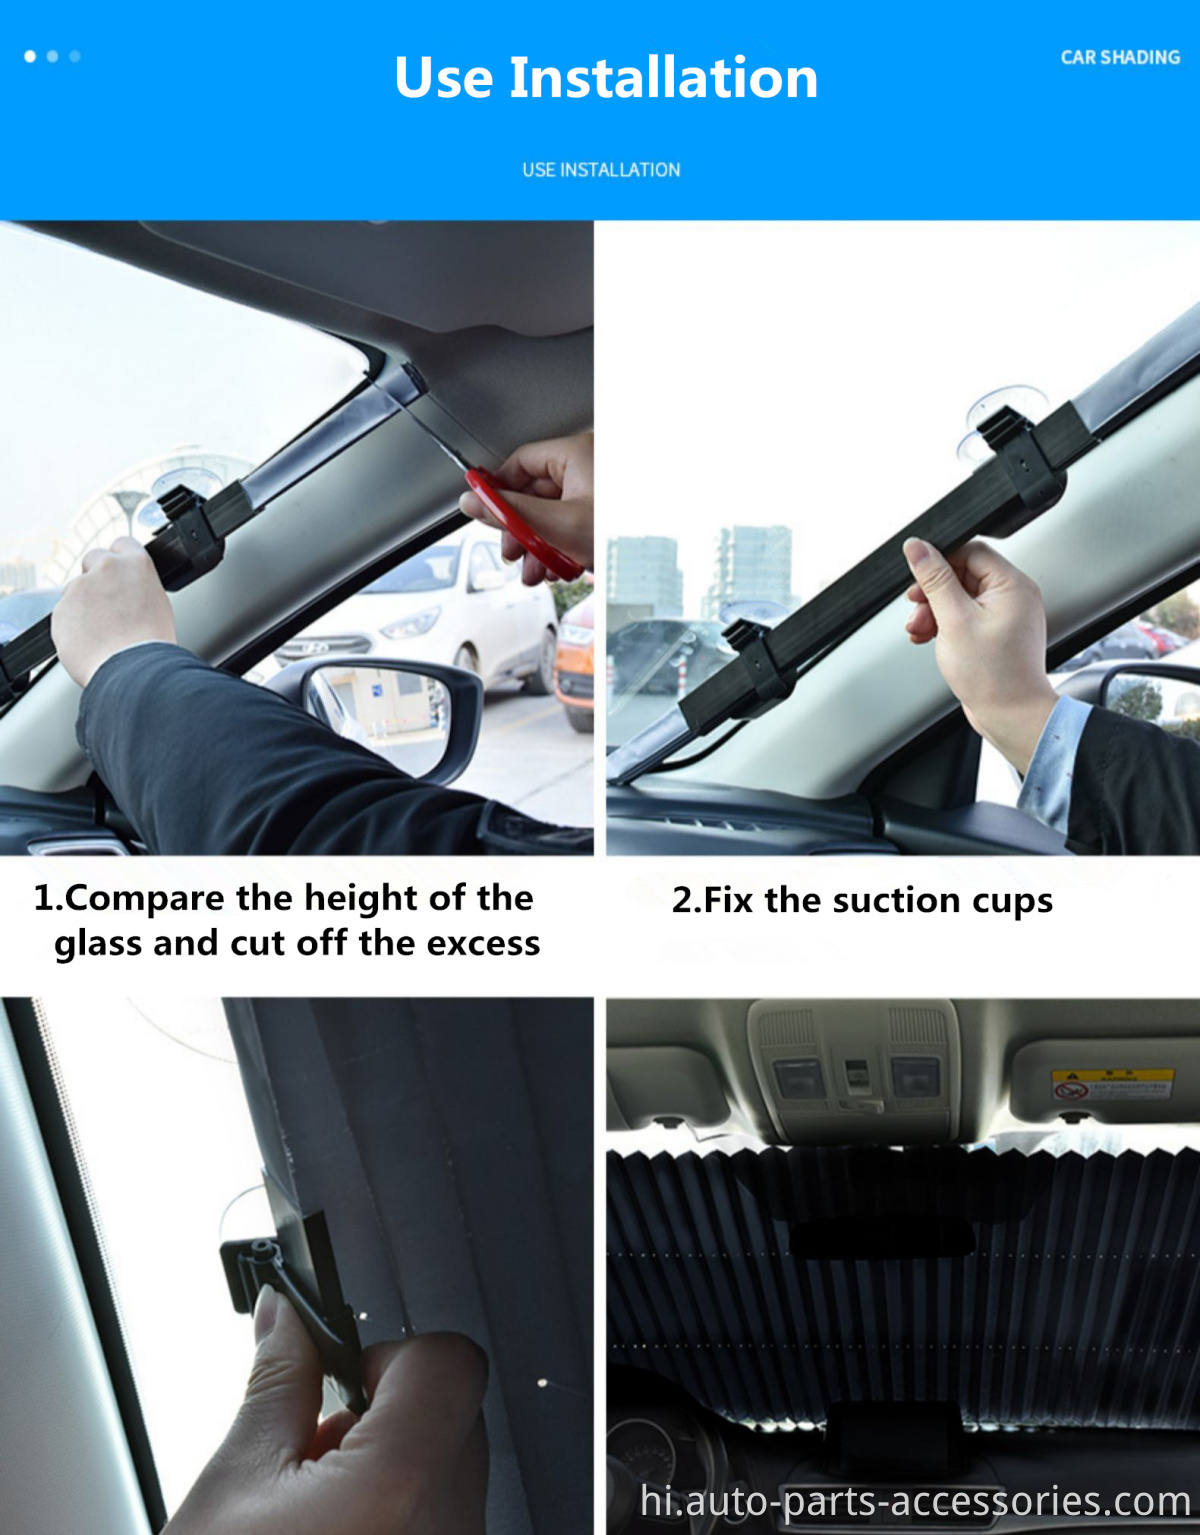 कस्टम प्रिंटिंग वापस लेने योग्य विंडस्क्रीन ऑटो सामने की खिड़की के लिए वायरलेस कार सनशेड स्थापित करें